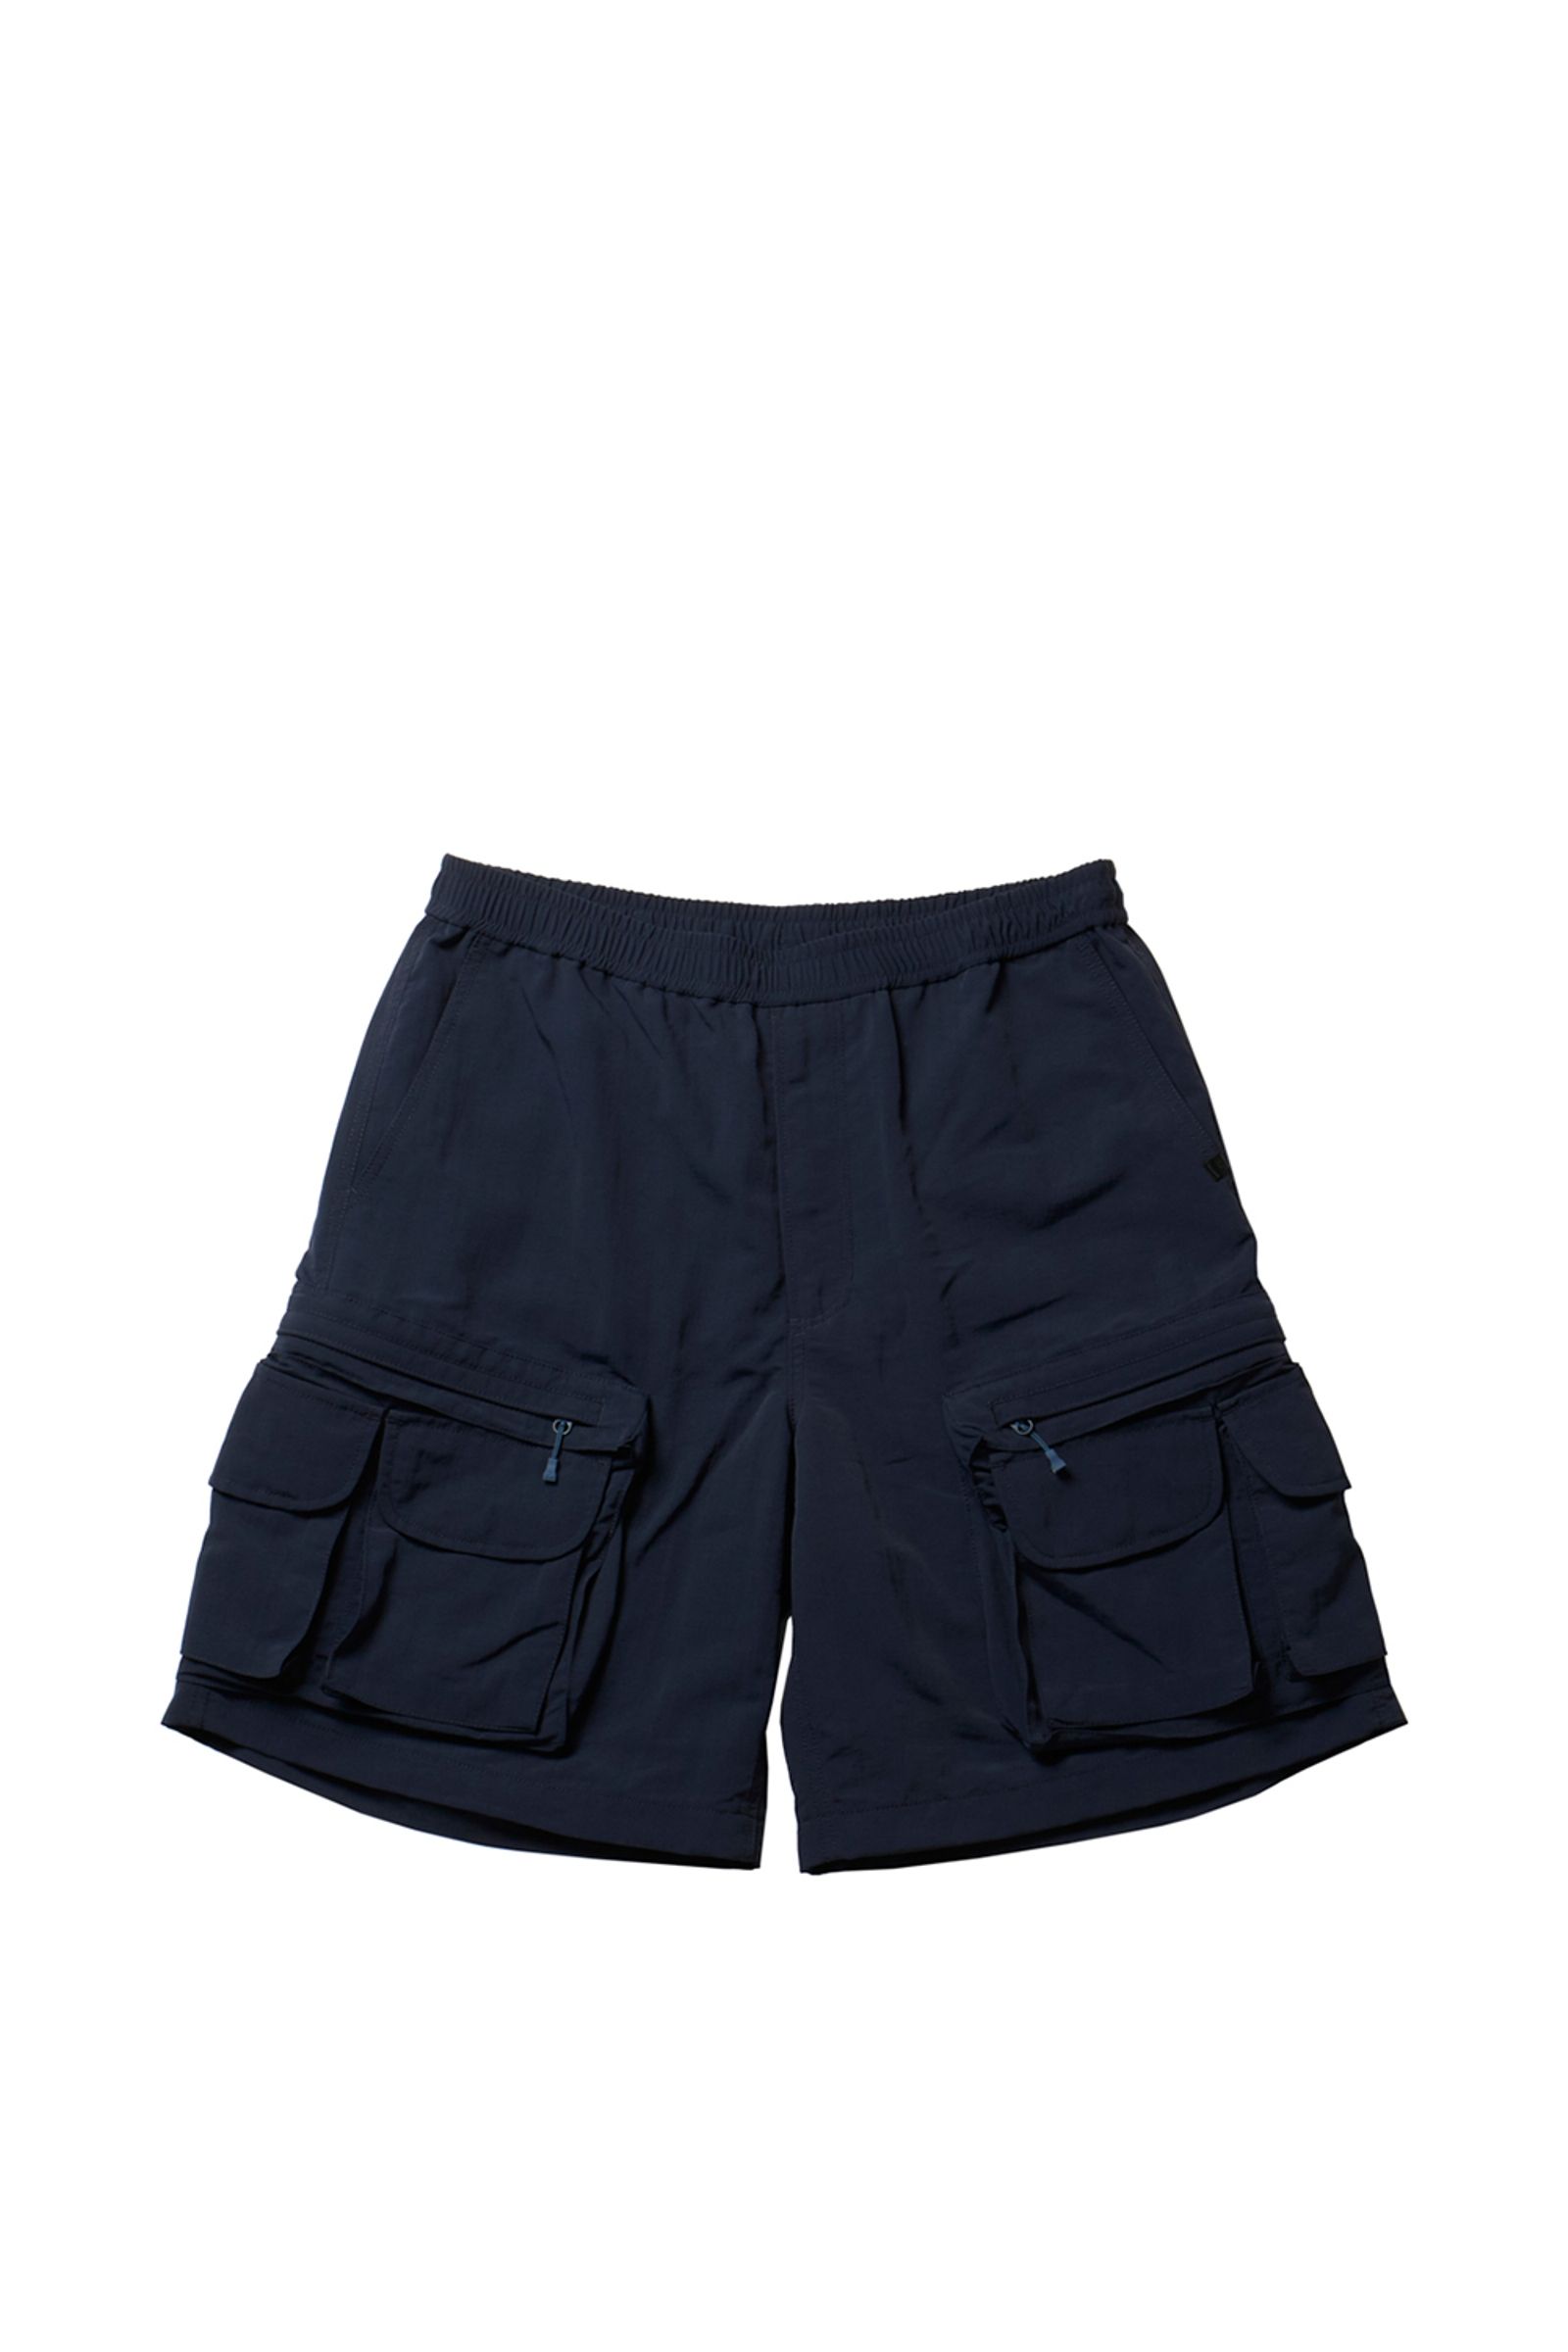 DAIWA PIER39 - tech perfect fishing shorts-dark beige-23ss men 